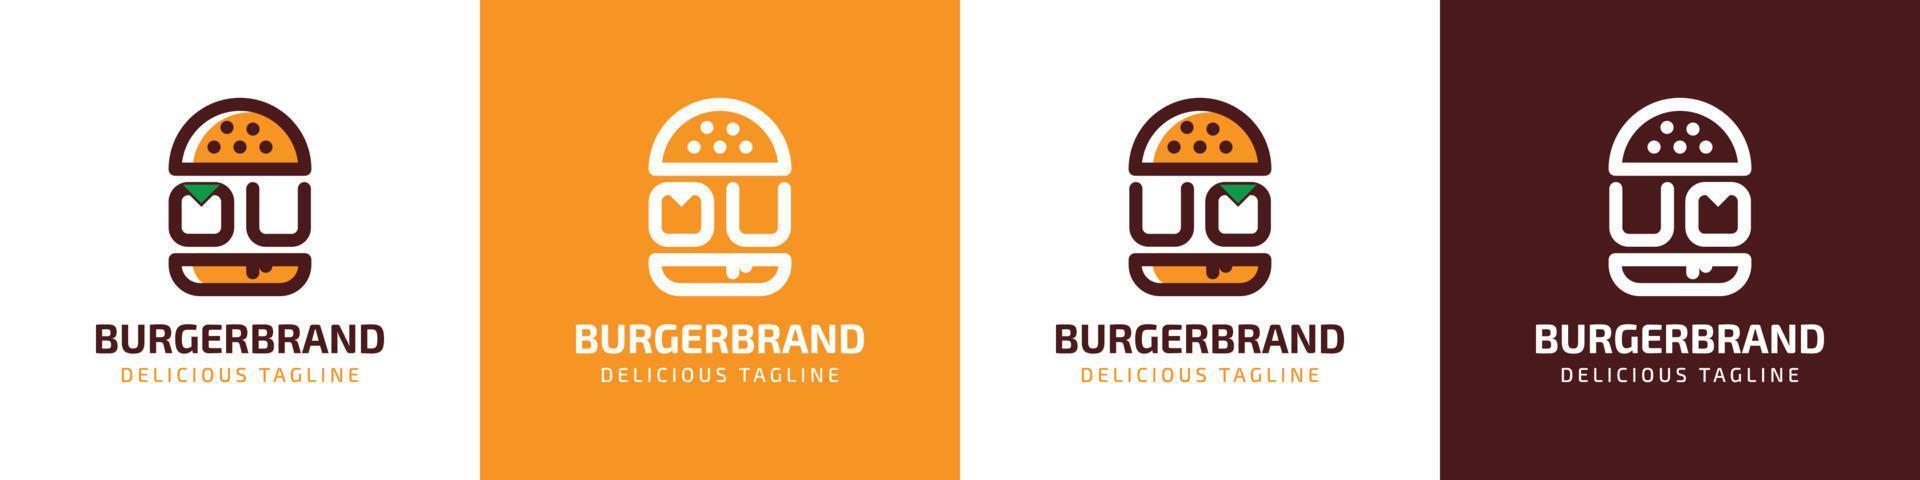 brev ou och uo burger logotyp, lämplig för några företag relaterad till burger med ou eller uo initialer. vektor